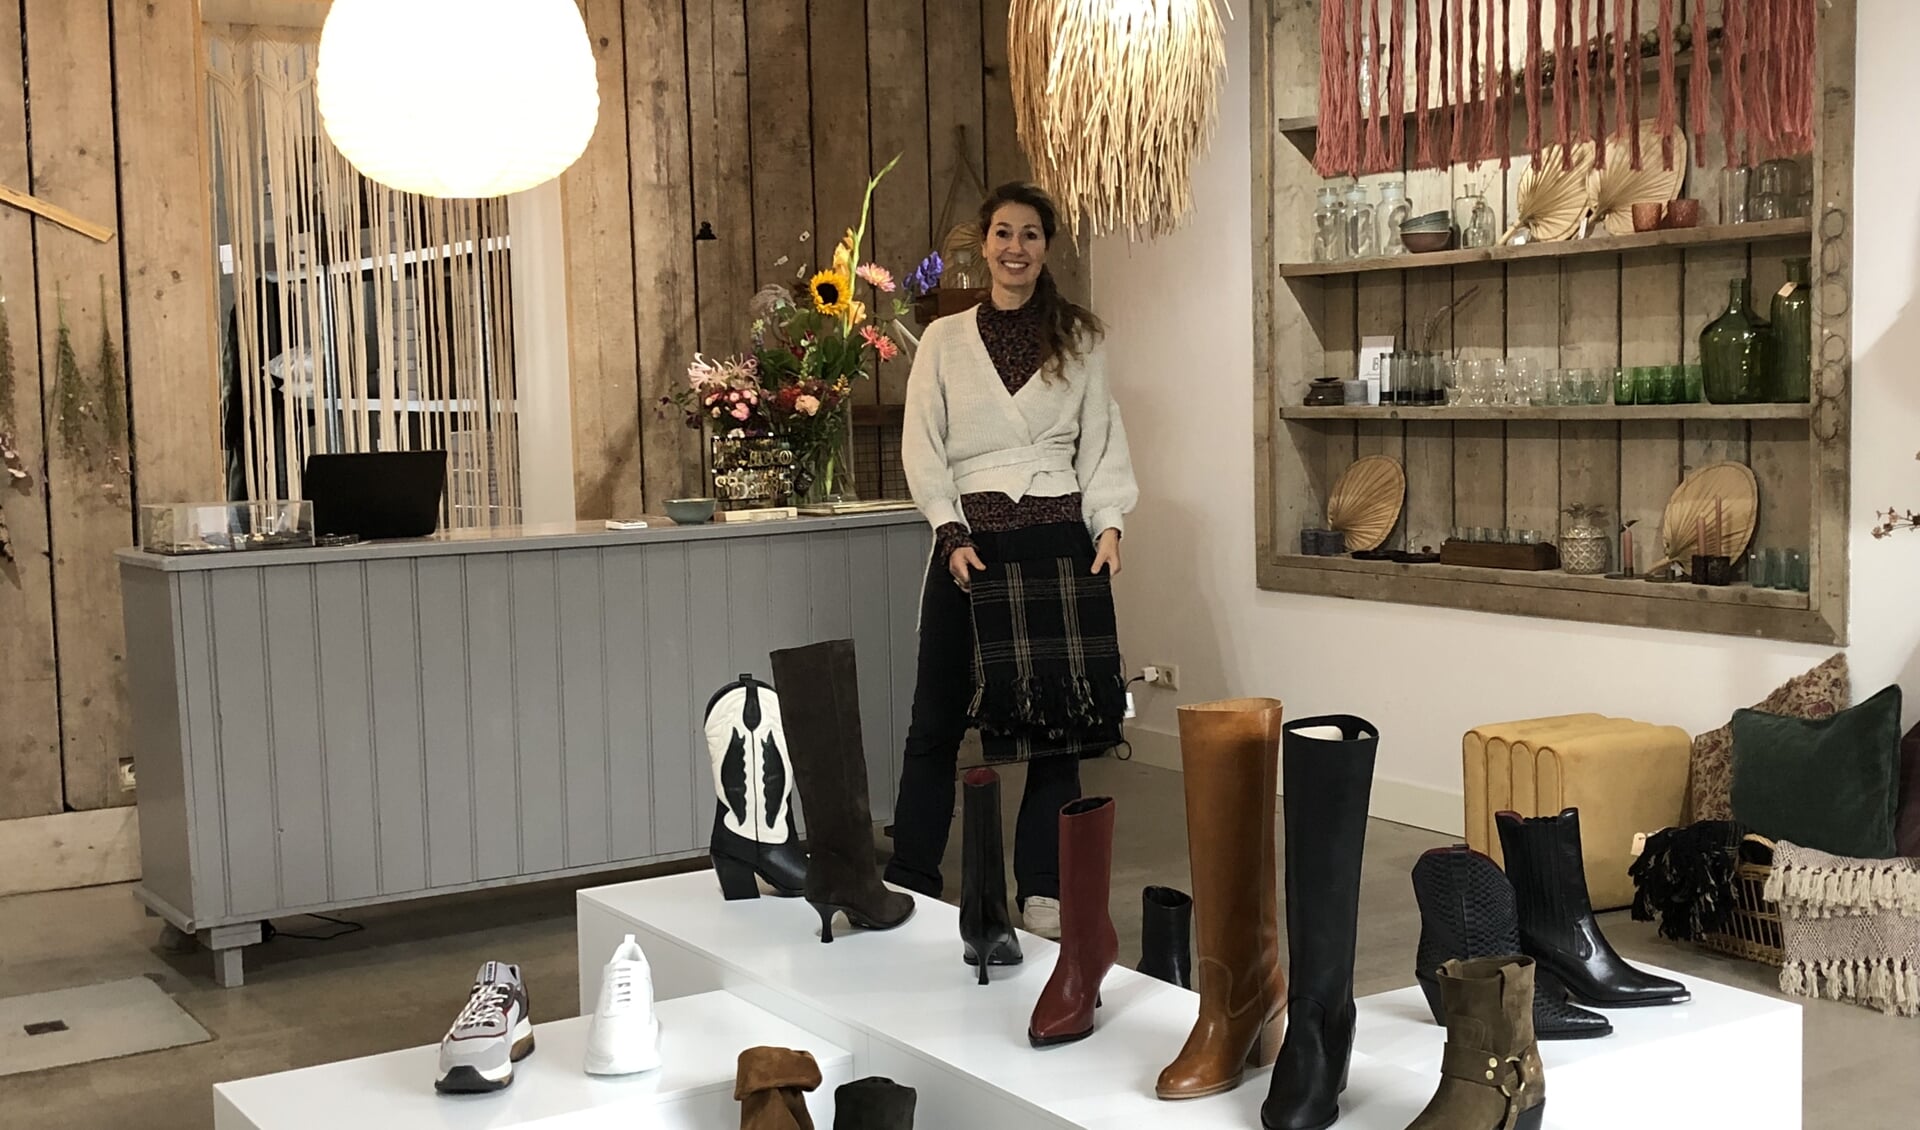 Lizzy Verdegaal hoopt dat mensen uit de hele regio haar leuke winkel komen ontdekken.